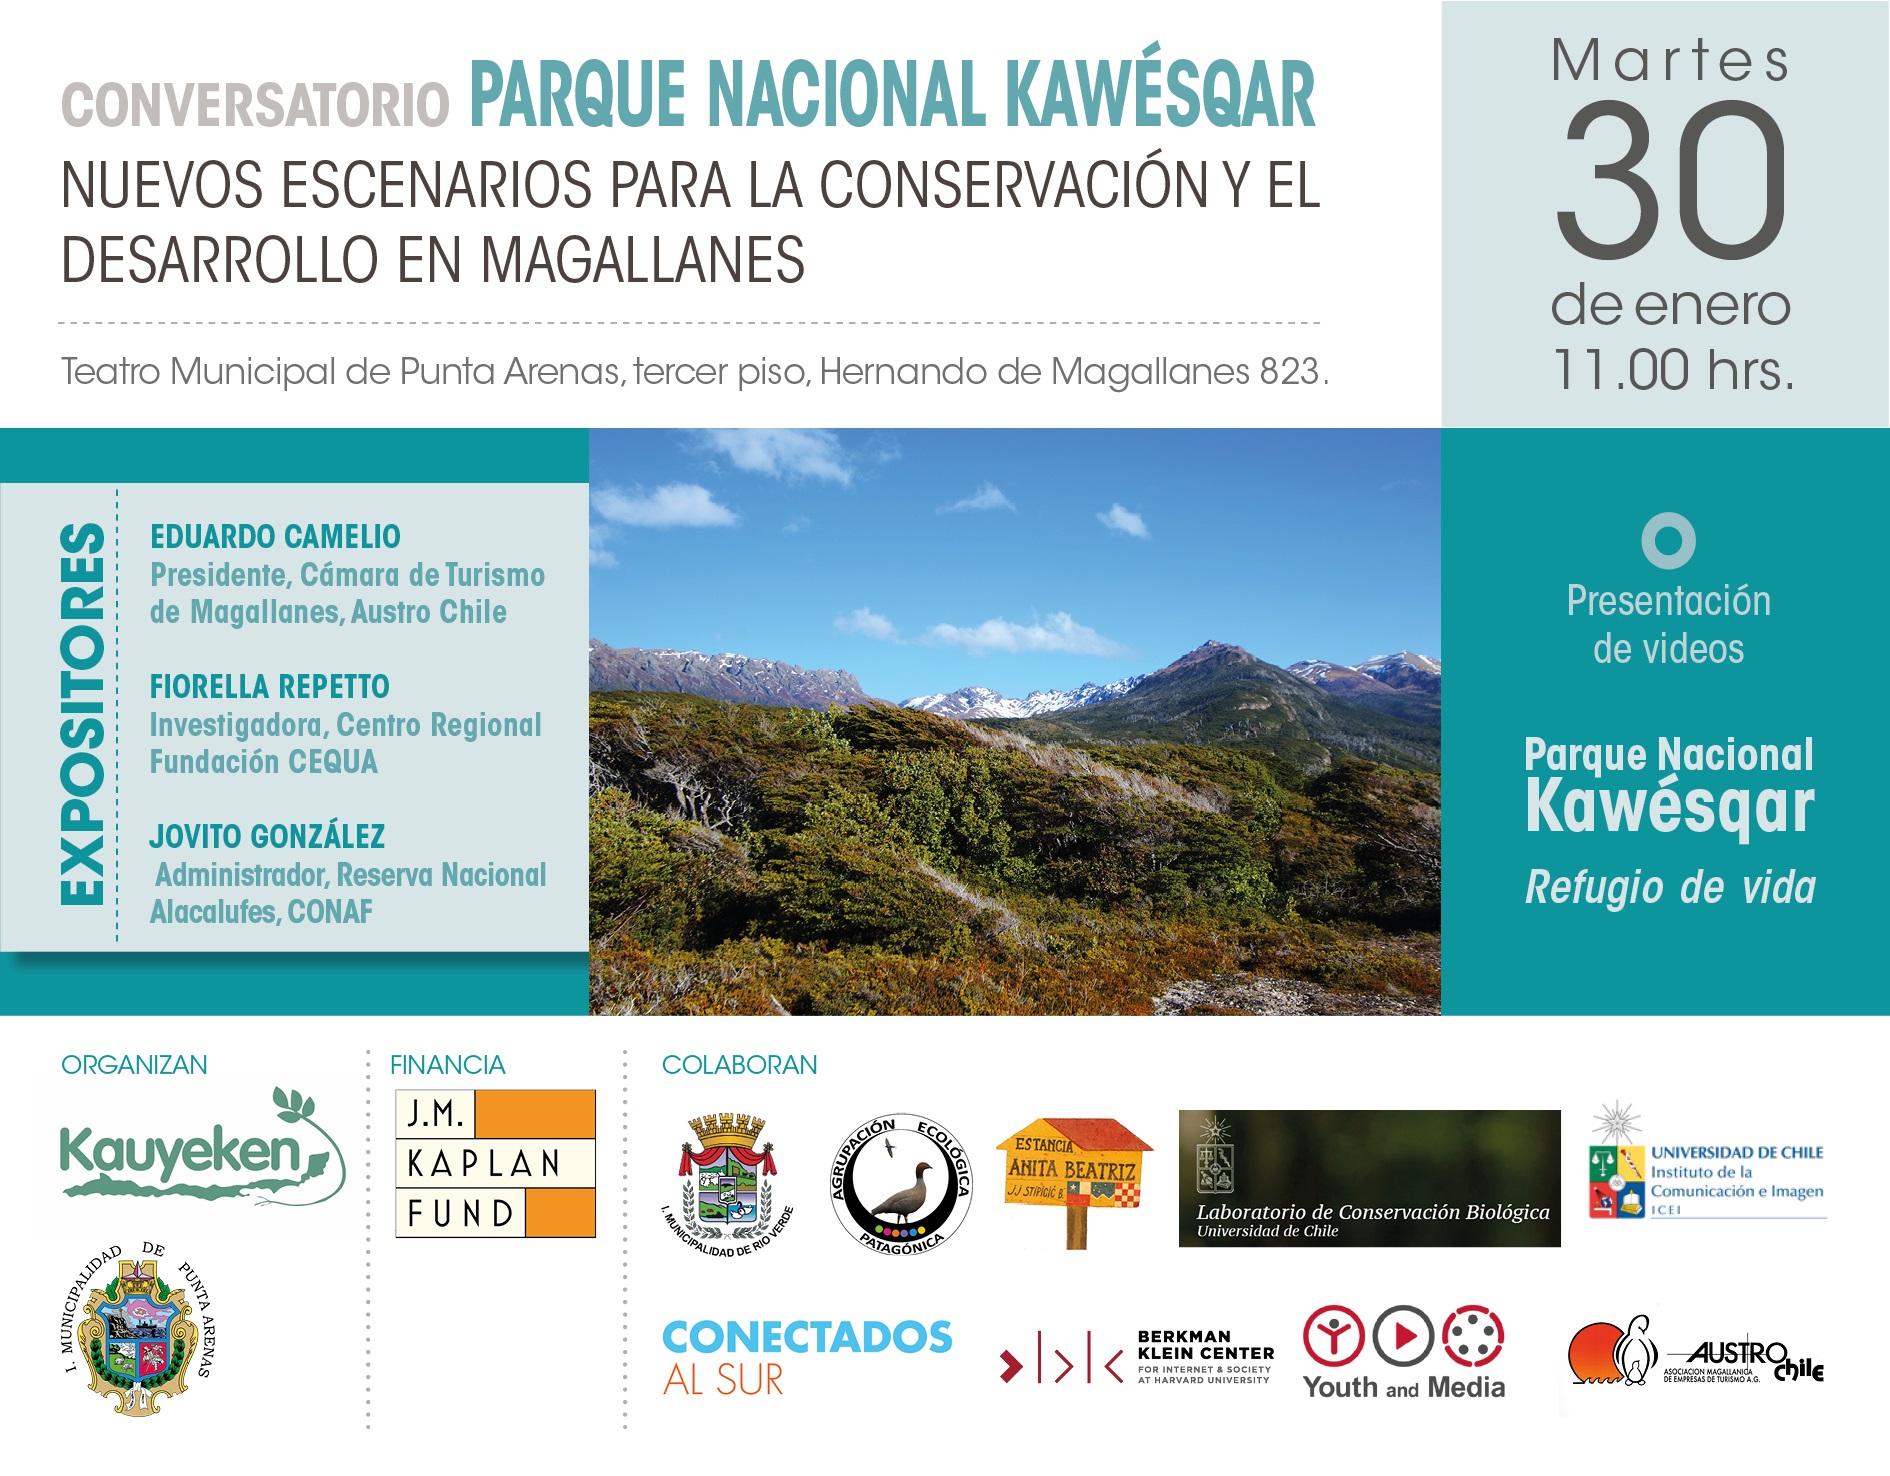 Conversatorio sobre desafíos y oportunidades del nuevo Parque Nacional Kaweshkar se efectuará el martes 30